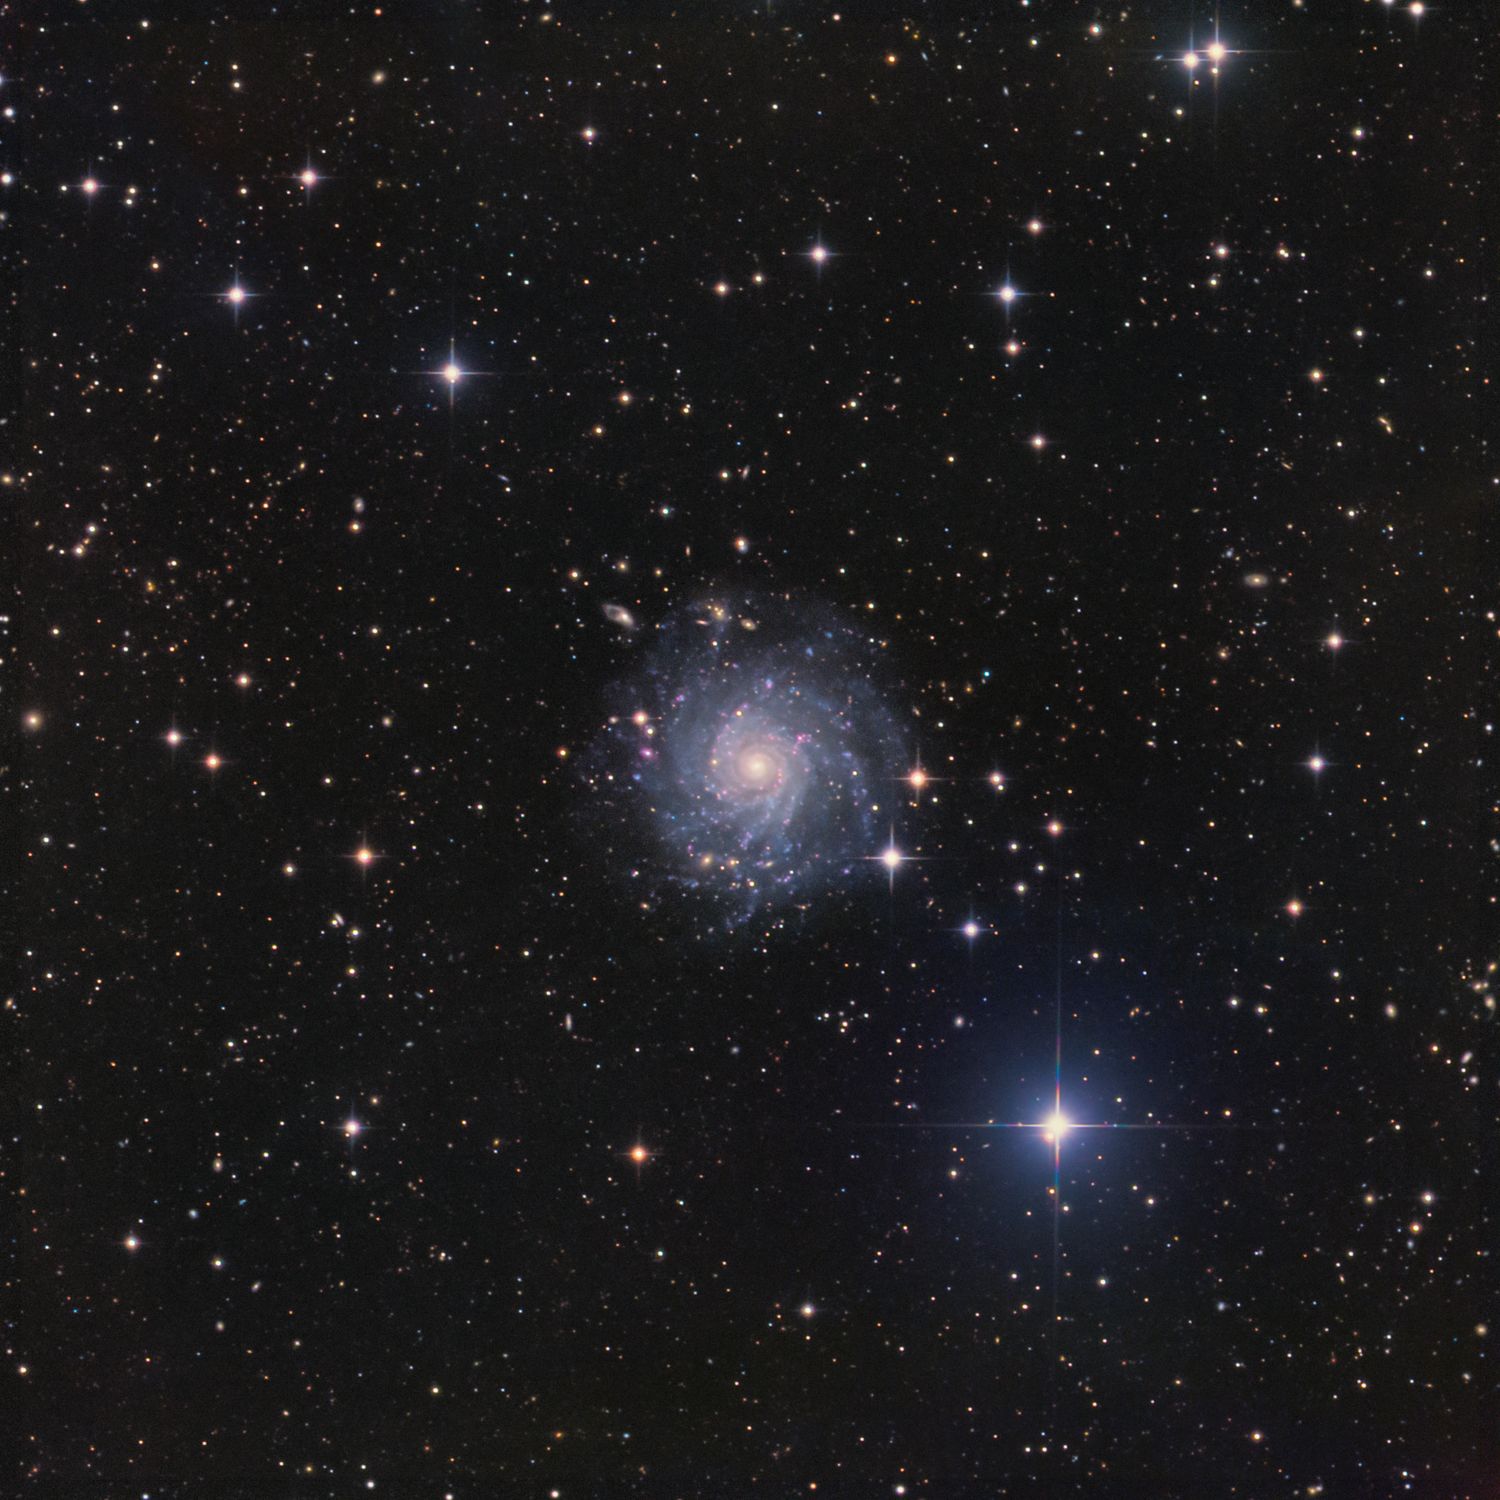 IC 5332